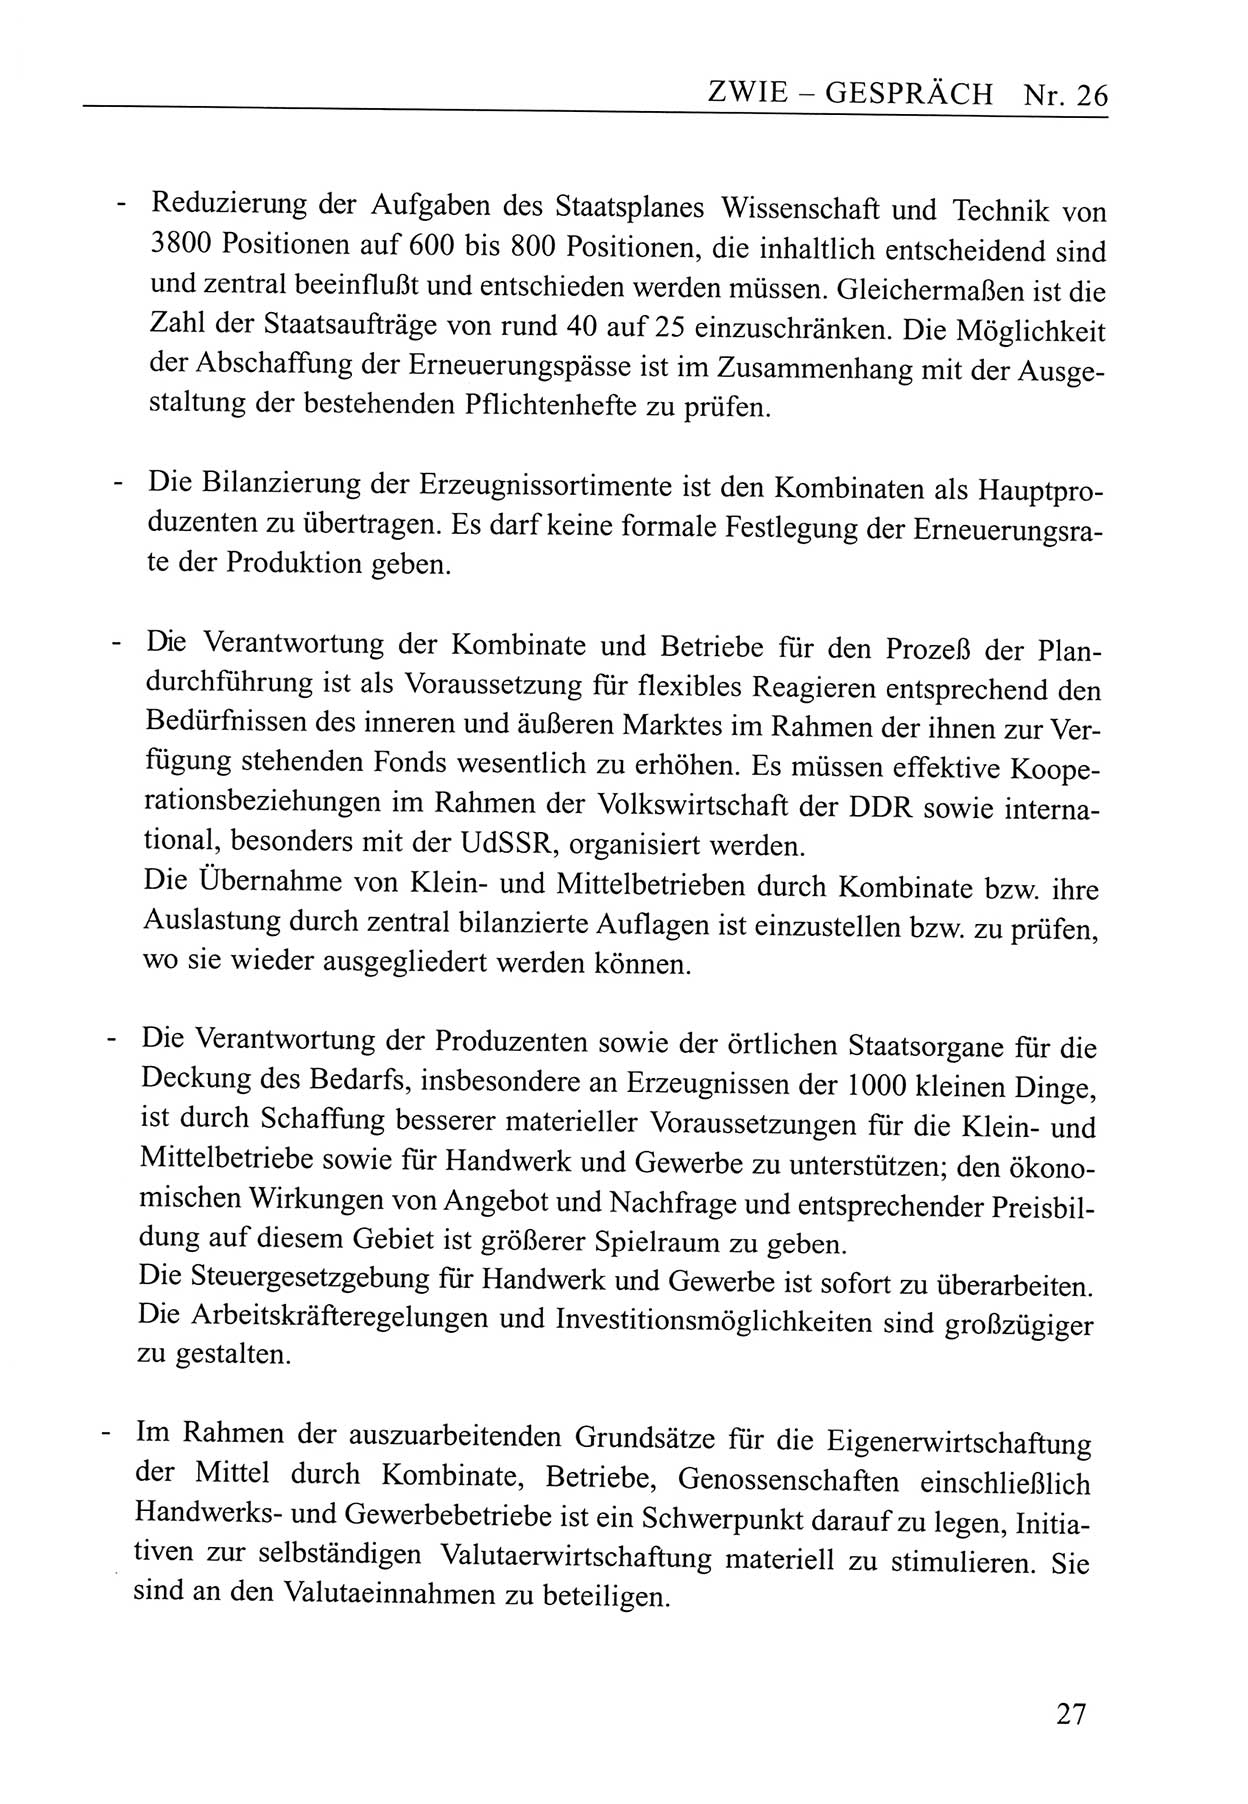 Zwie-Gespräch, Beiträge zum Umgang mit der Staatssicherheits-Vergangenheit [Deutsche Demokratische Republik (DDR)], Ausgabe Nr. 26, Berlin 1995, Seite 27 (Zwie-Gespr. Ausg. 26 1995, S. 27)